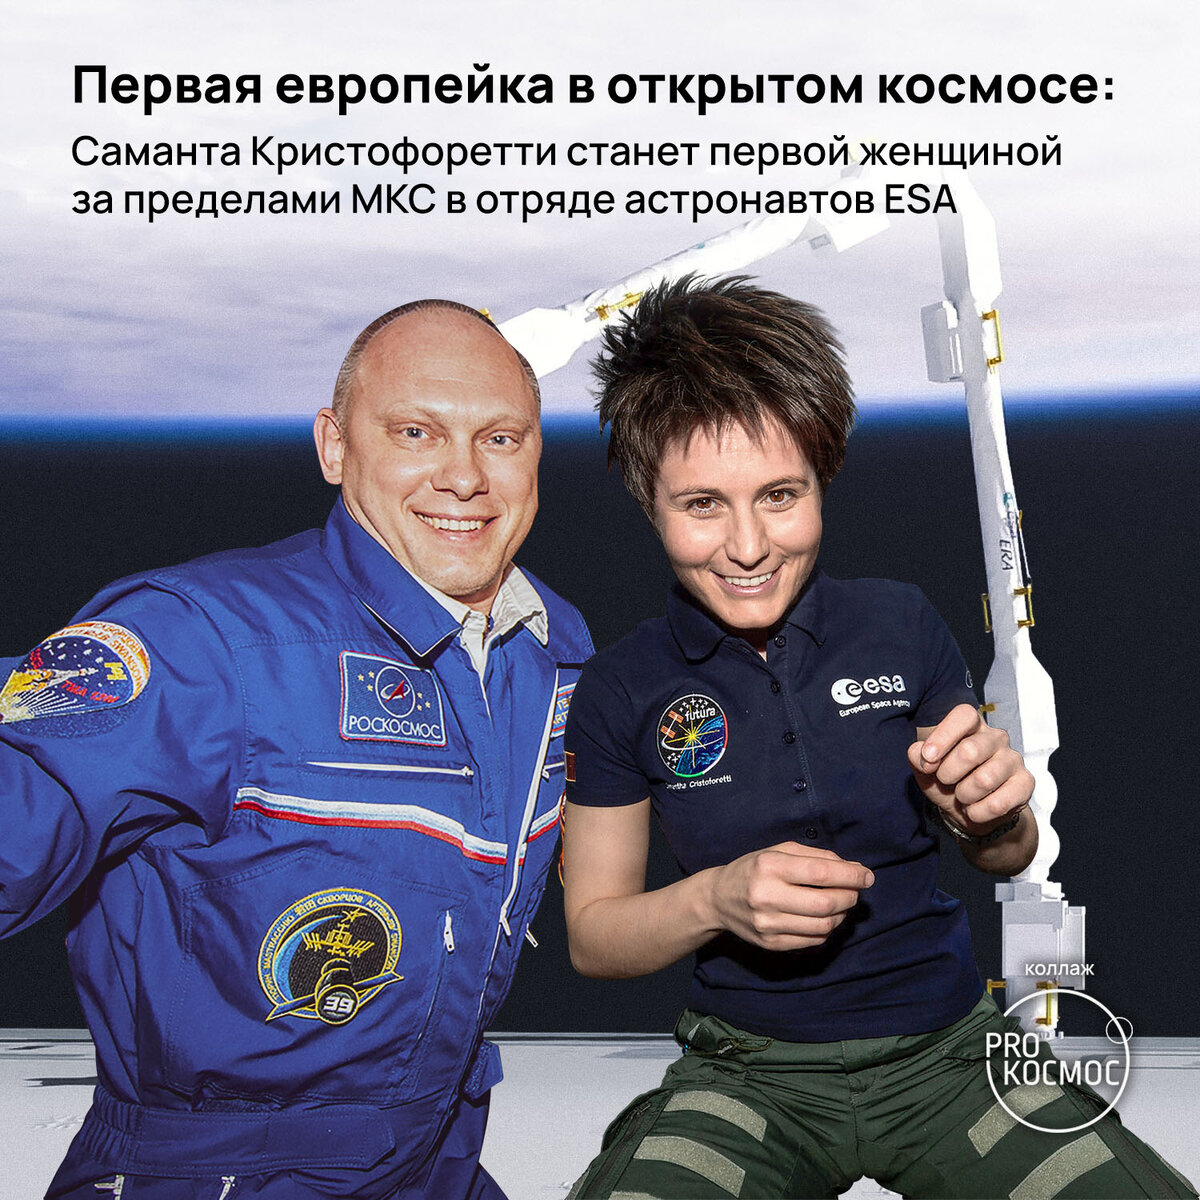 Первая европейка в открытом космосе: Саманта Кристофоретти станет первой женщиной за пределами МКС в отряде астронавтов ESA⁠⁠ height=1200px width=1200px